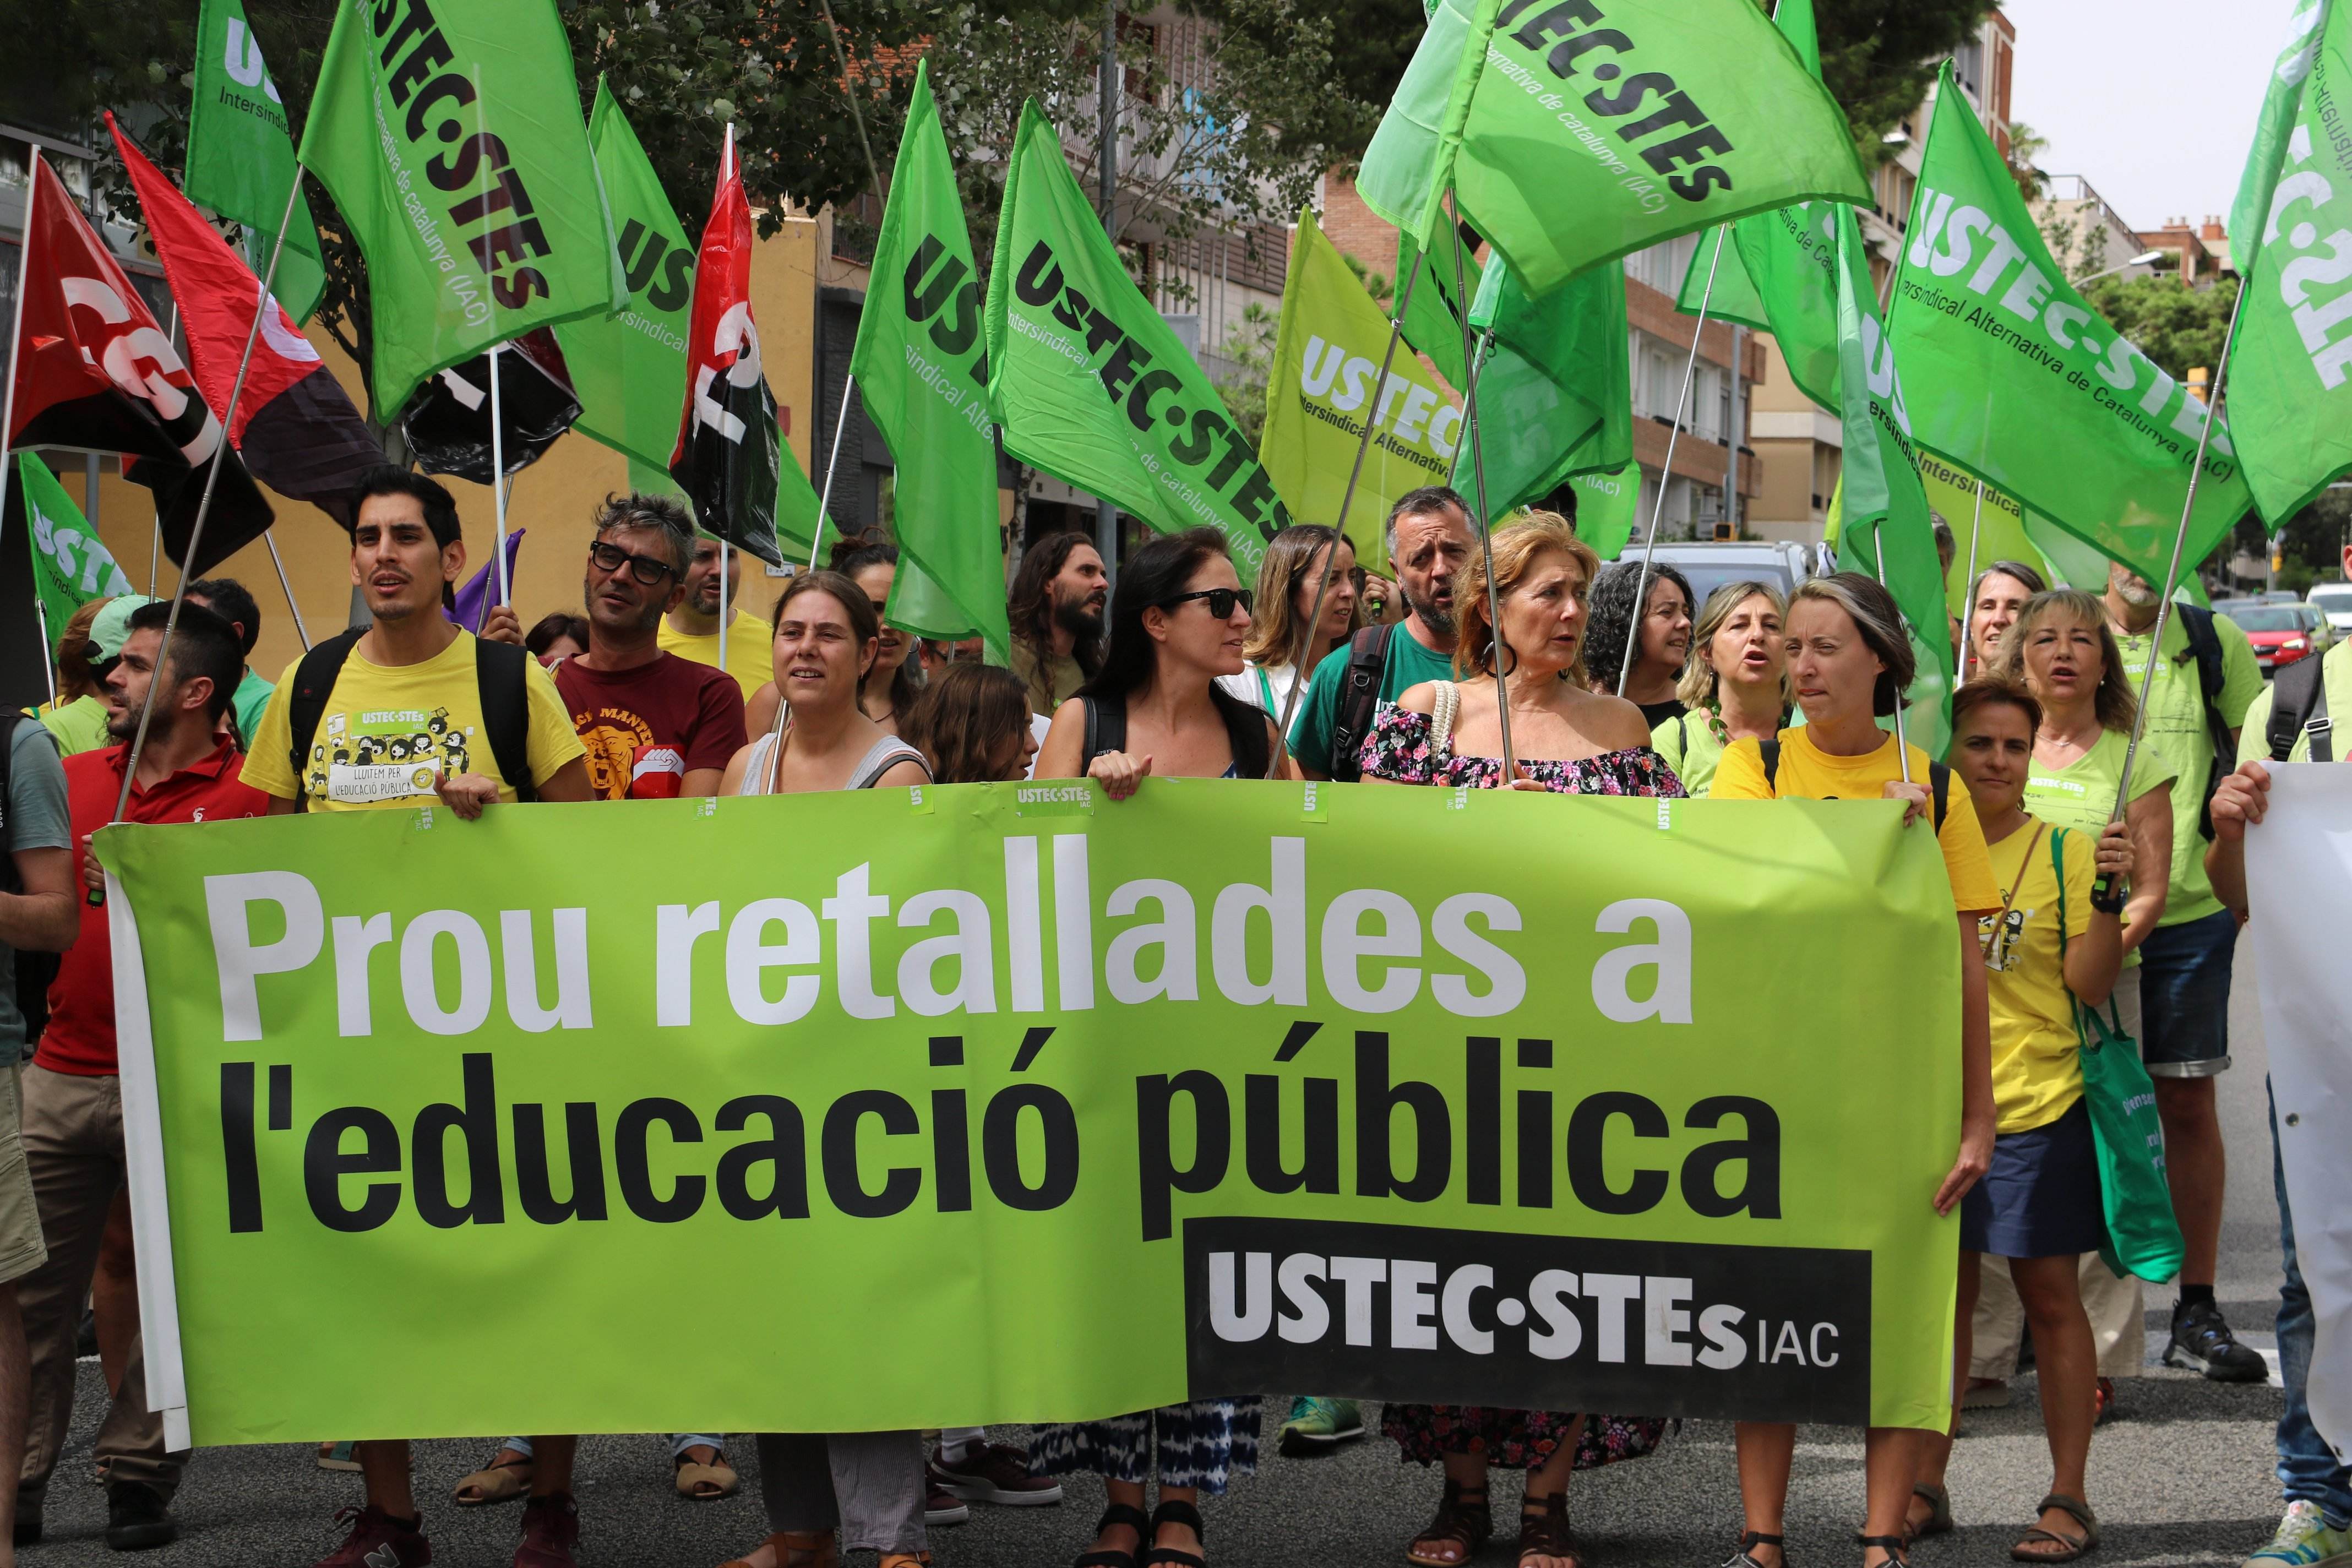 Els sindicats educatius mantenen la vaga convocada el primer dia de curs i reclamen "negociar"